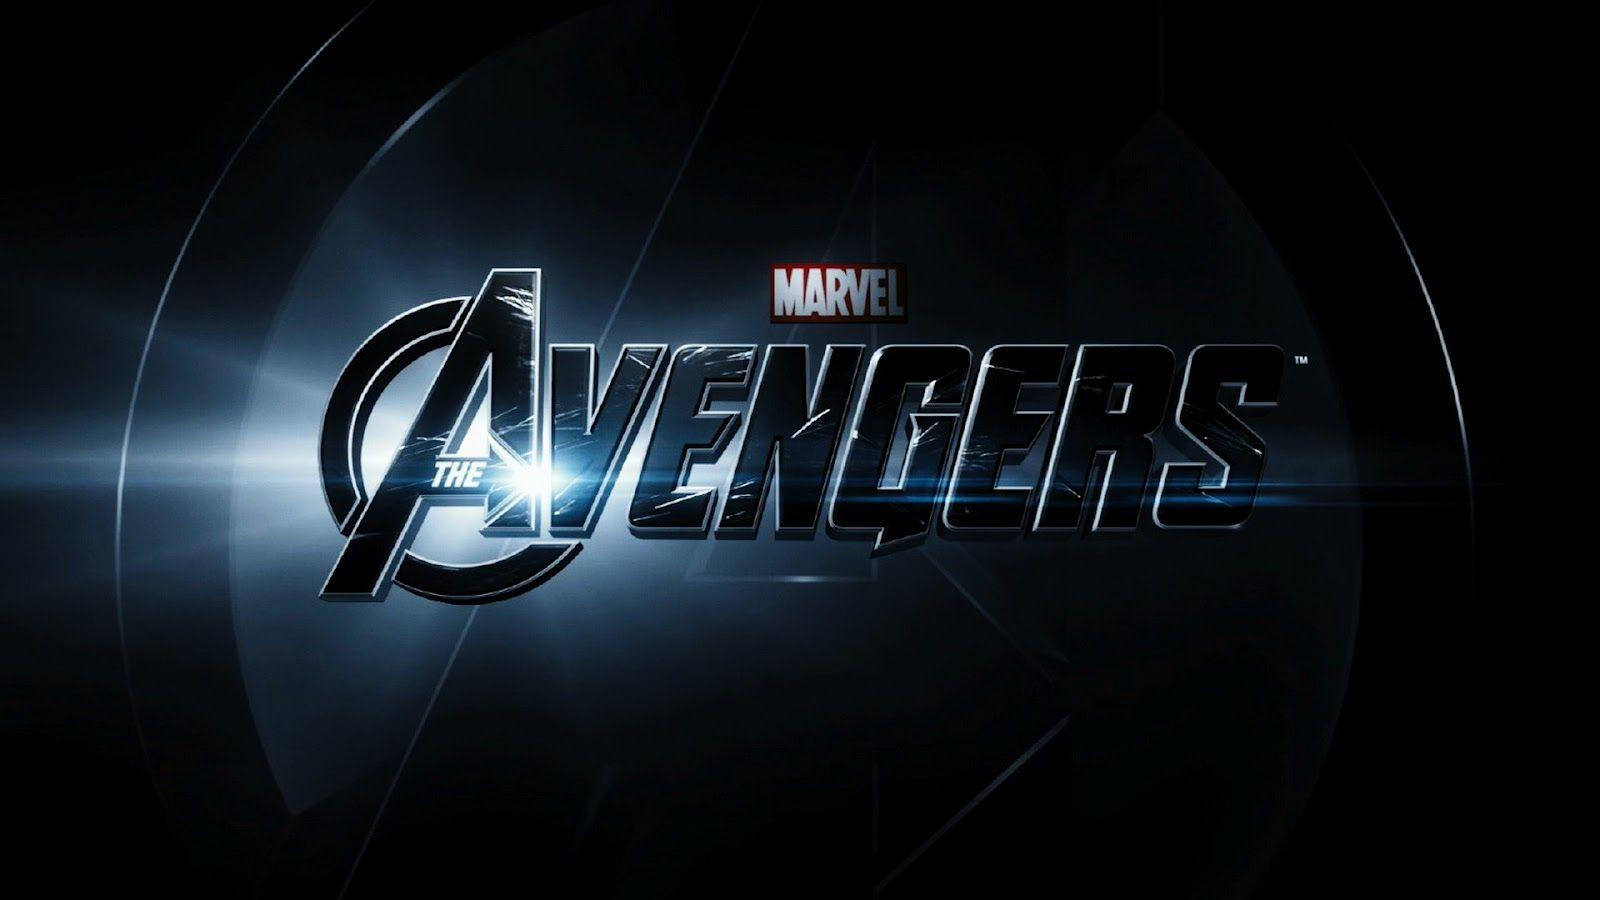 Avengers Background. The Avengers